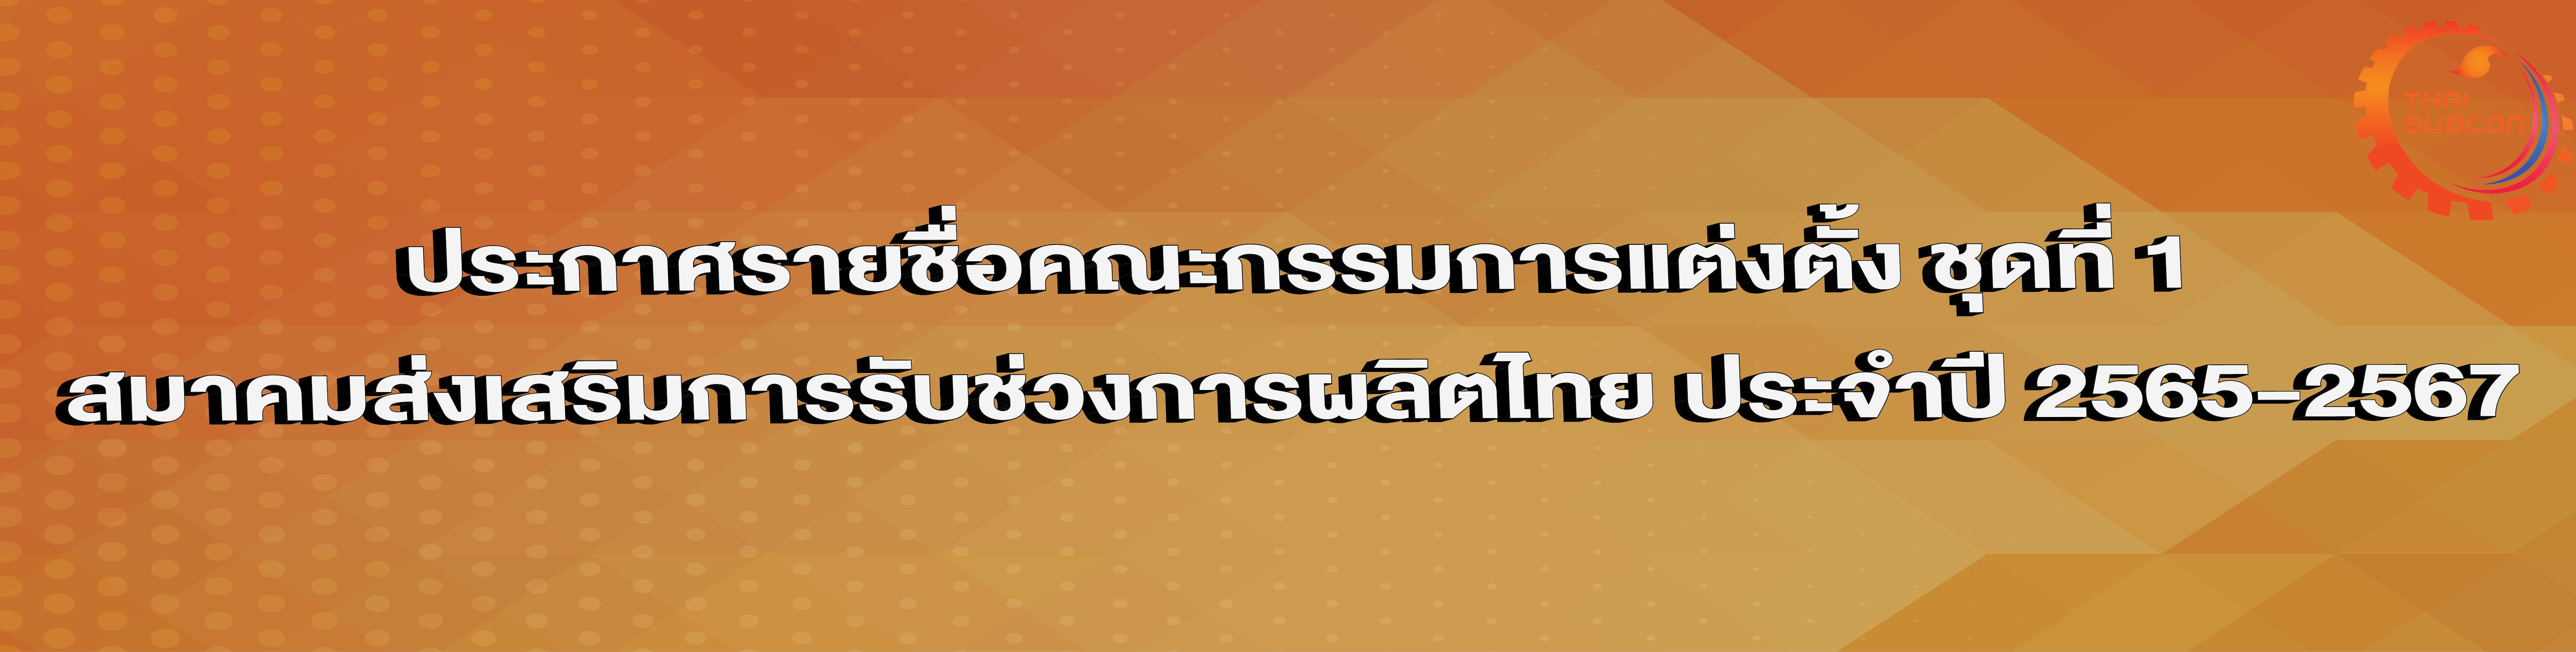 ประกาศจากสมาคมส่งเสริมการรับช่วงการผลิตไทย > รายชื่อคณะกรรมการแต่งตั้ง ชุดที่ 1 สมาคมส่งเสริมการรับช่วงการผลิตไทย ประจำปี 2565-2567